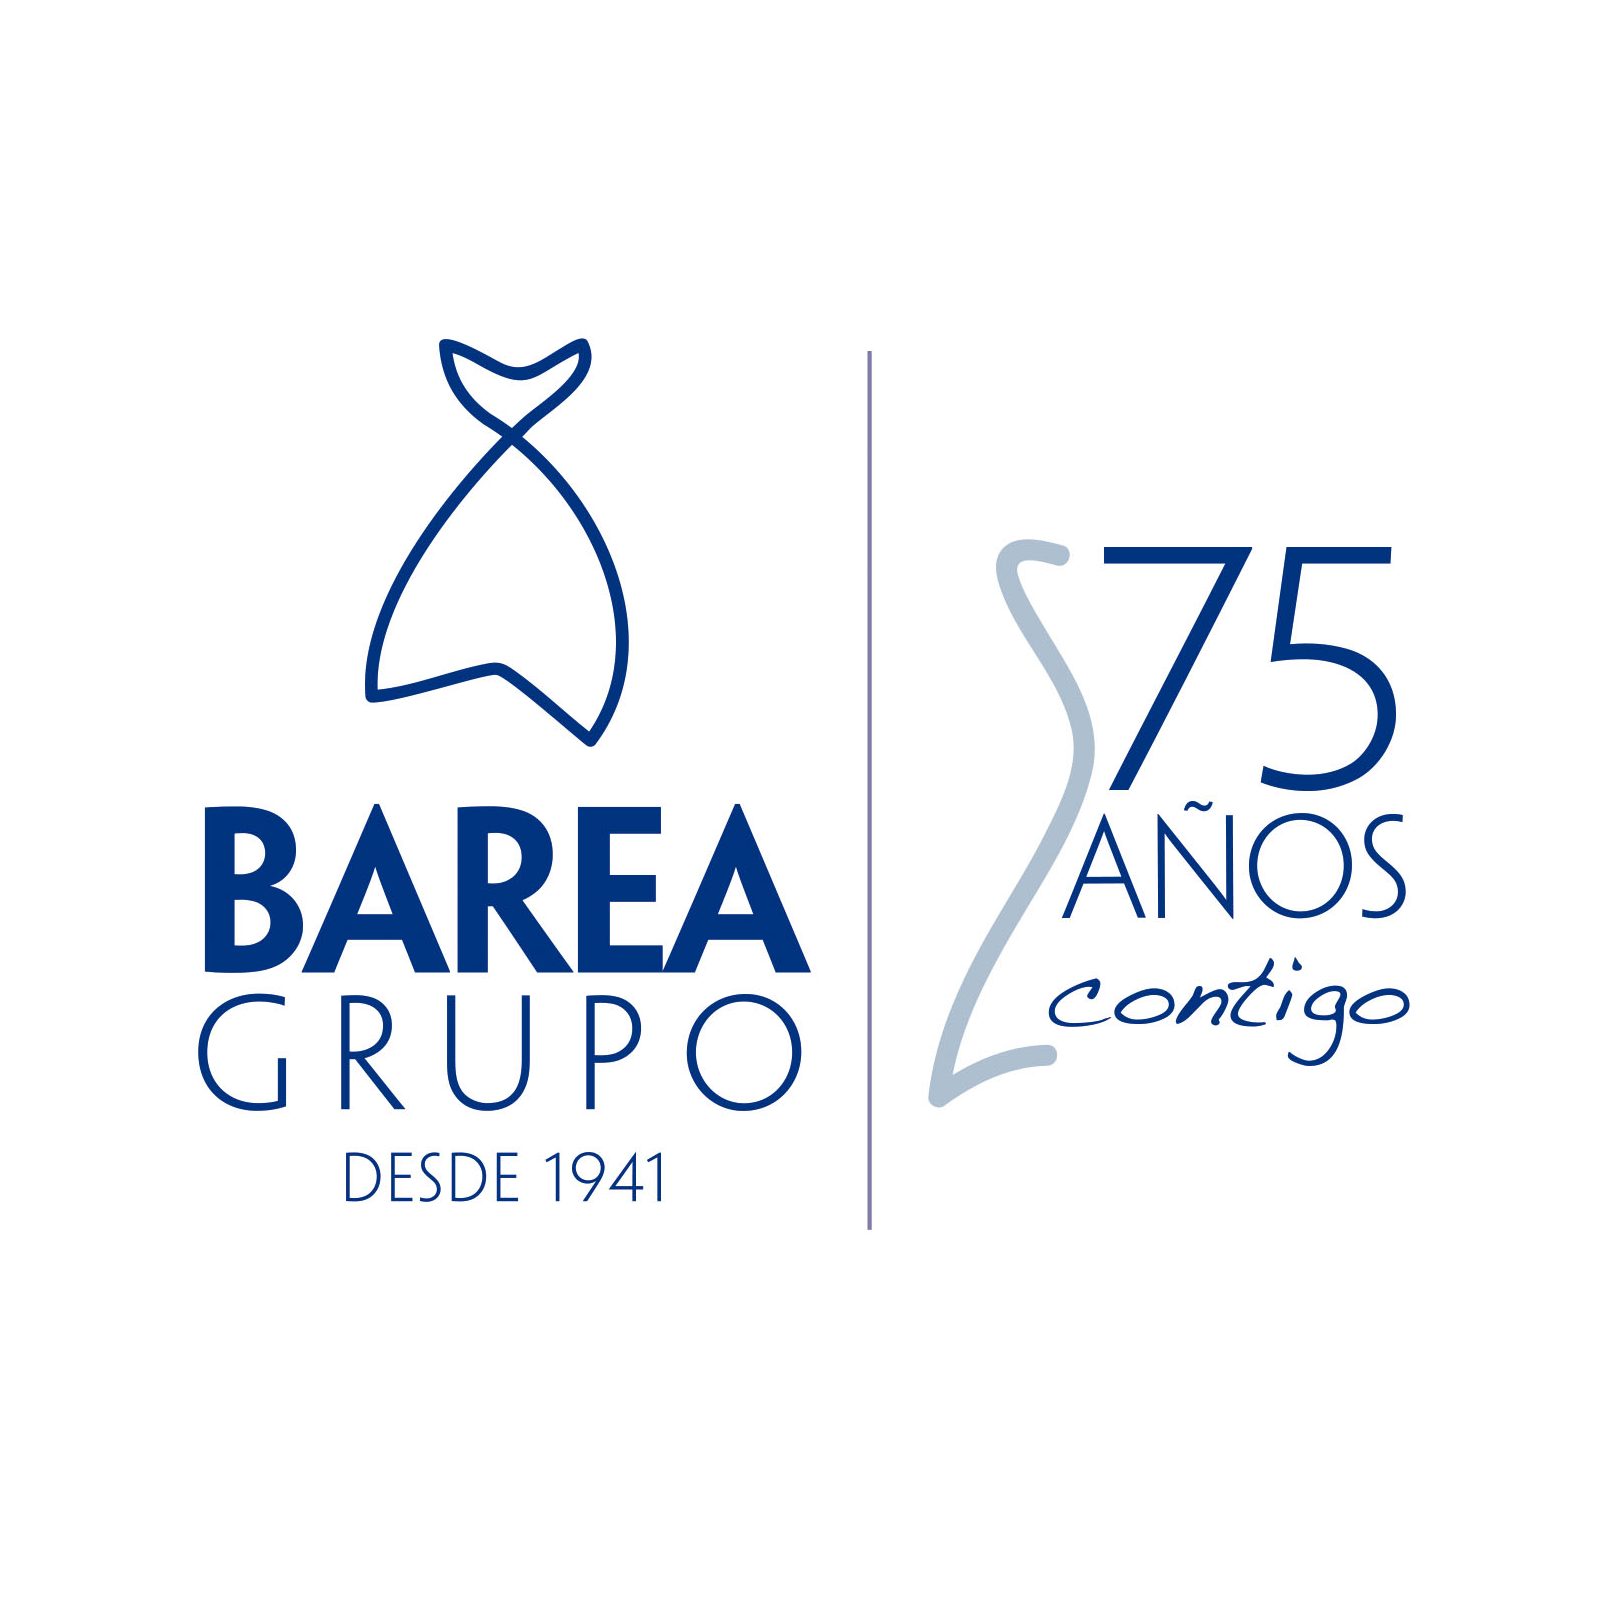 barea_grupo_75_aniversario_marca_logotipo_textura_design